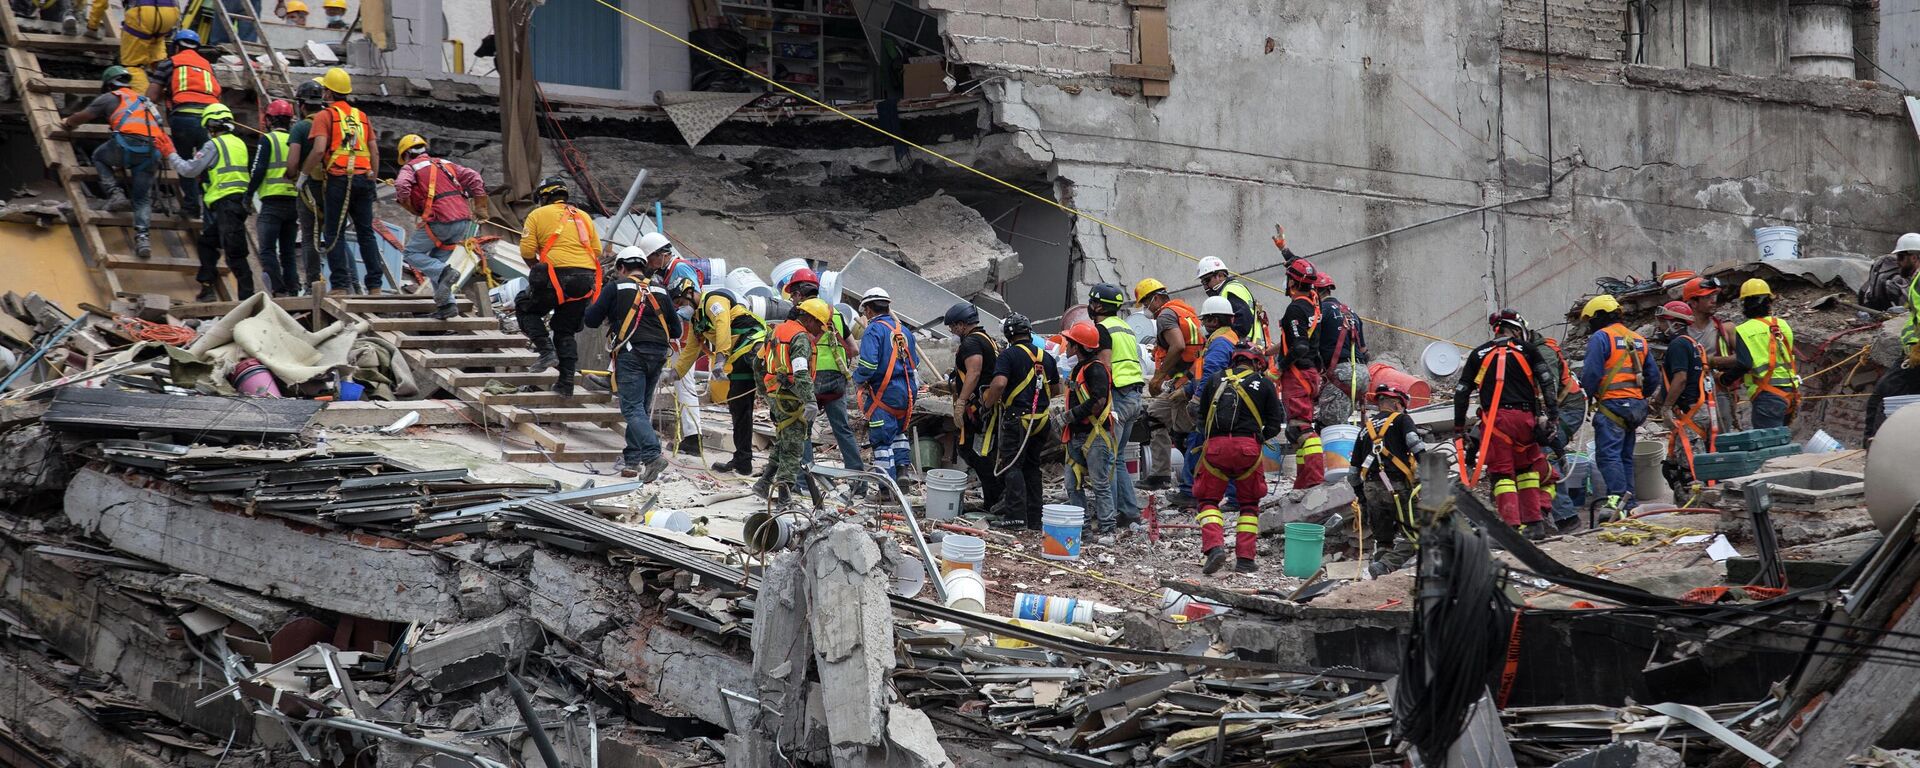 Terremoto del 19 de septiembre de 2017 en México - Sputnik Mundo, 1920, 22.09.2021